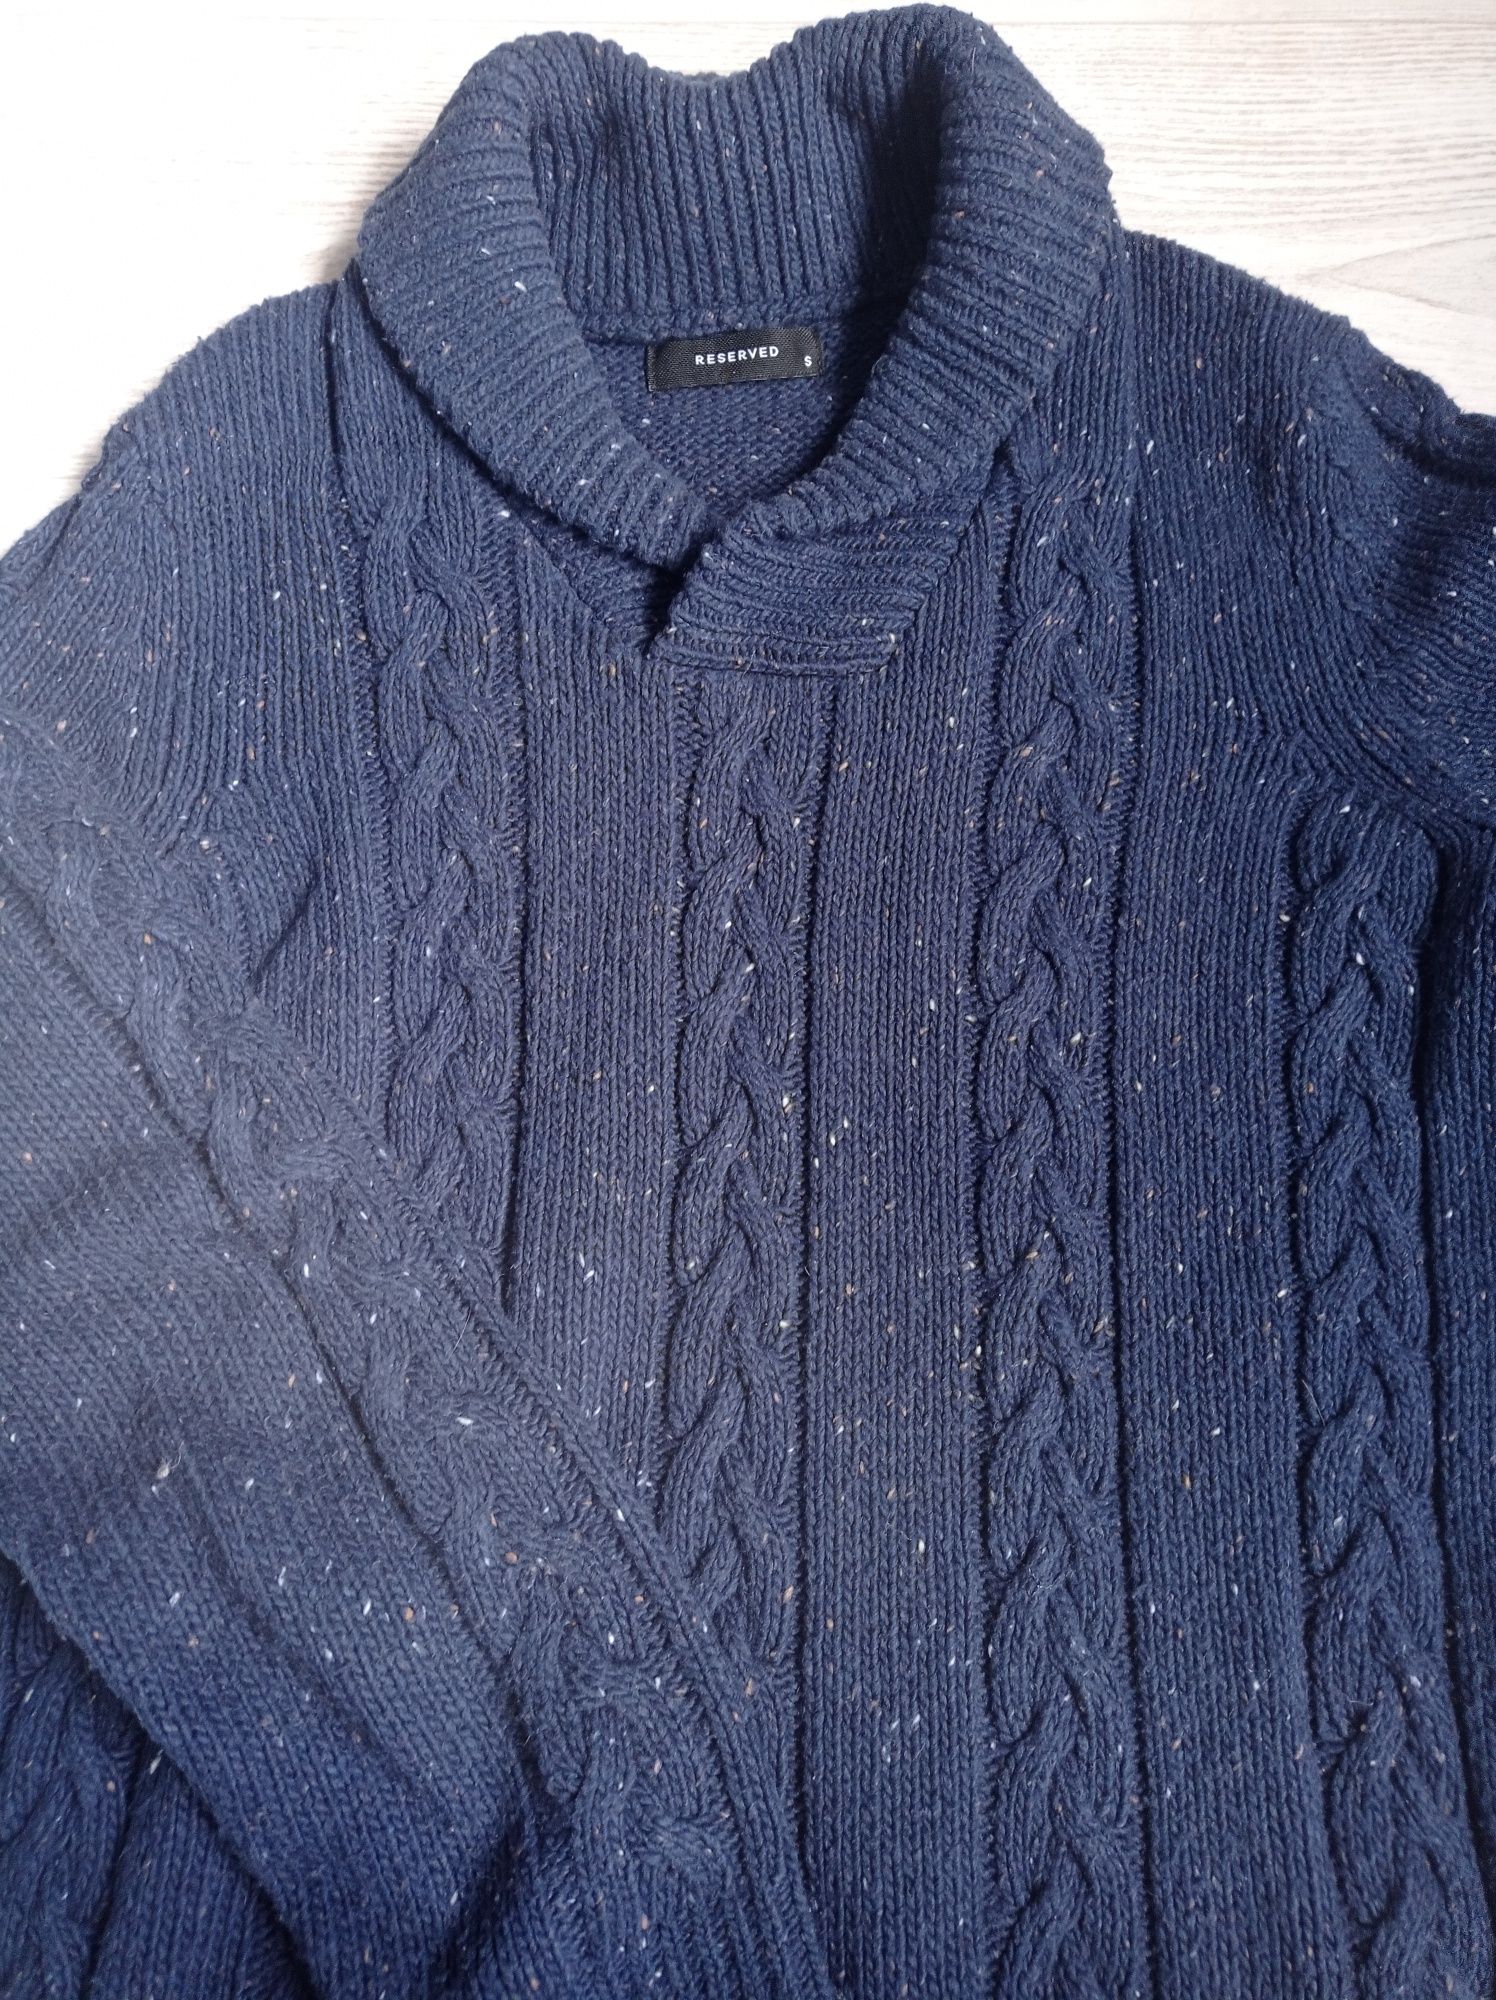 Sweterek sweter męski młodzieżowy gruby splot S/M granatowy golf